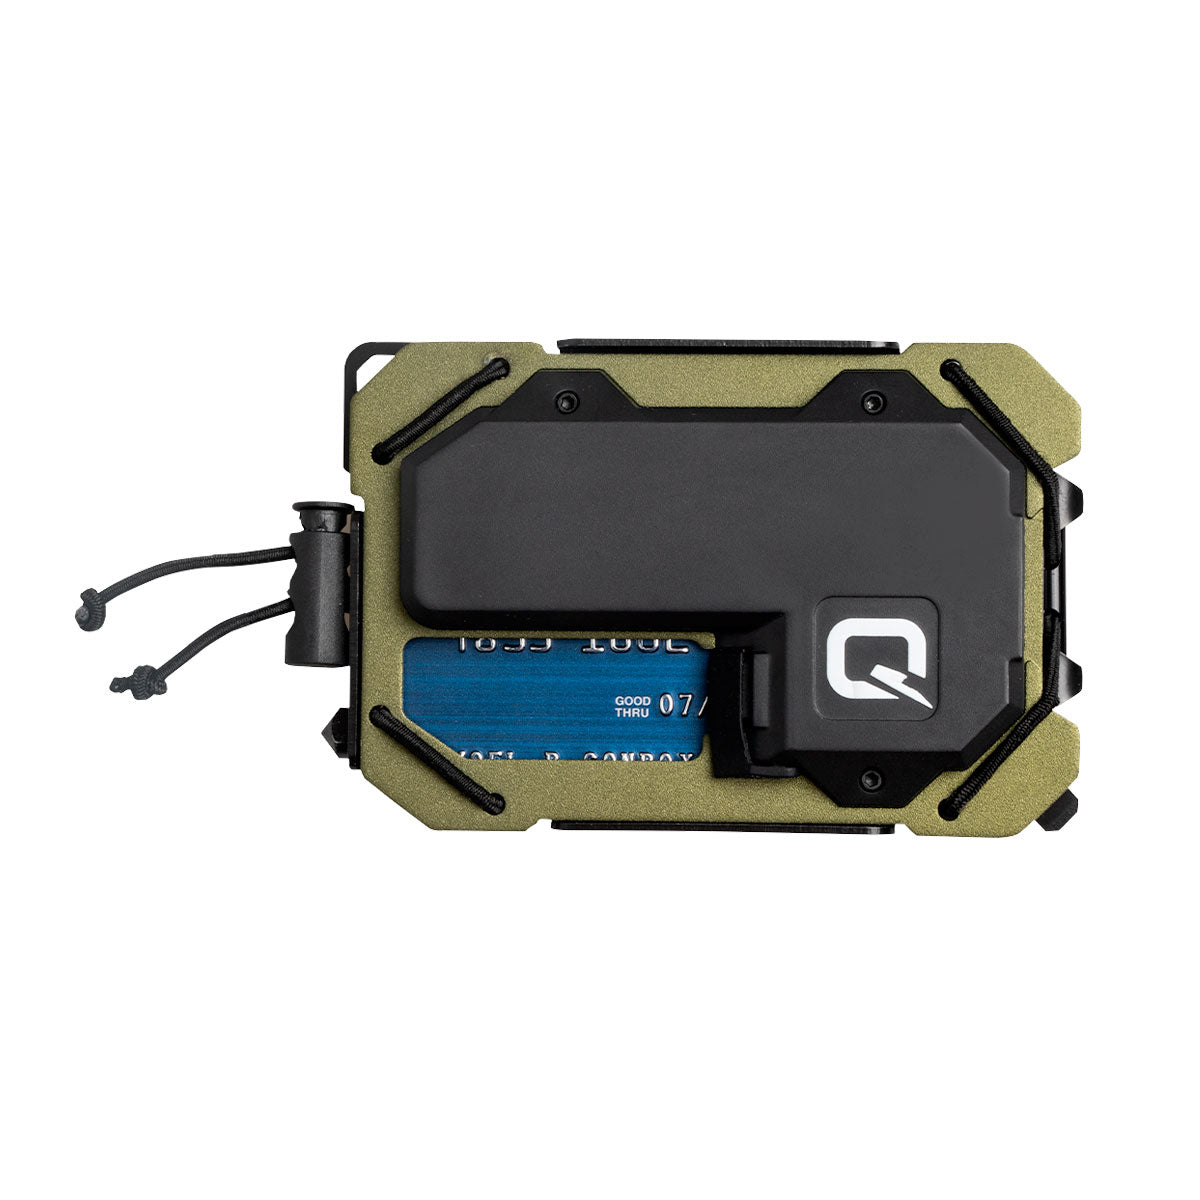 Quiqlite TAQ Wallet OD Green EDC Everyday Carry Quiqlite Tactical Gear Supplier Tactical Distributors Australia